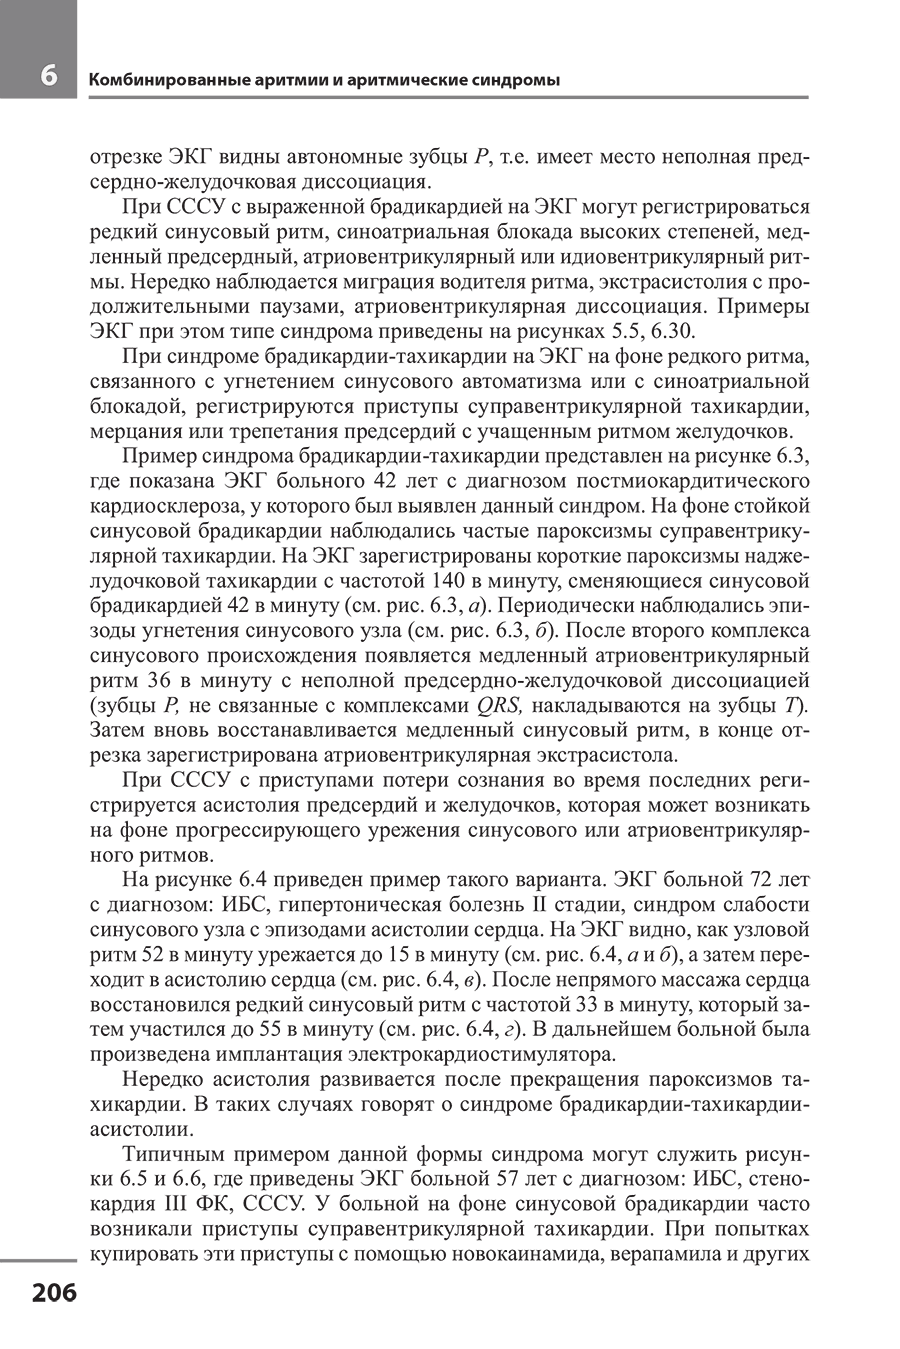 Пример страницы из книги "Руководство по практической электрокардиографии" - Дощицин В. Л.